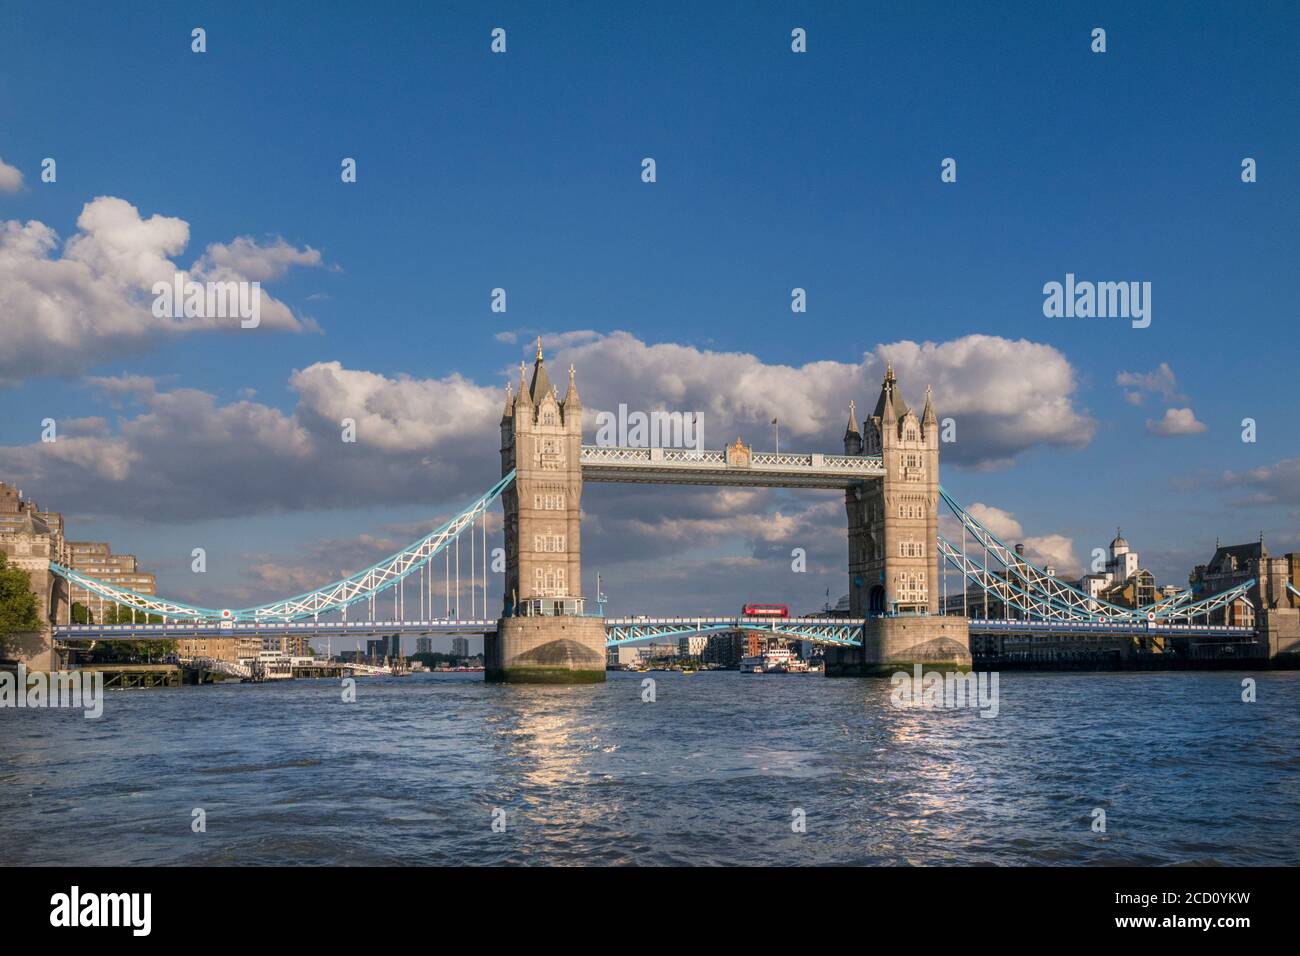 Tower Bridge weiten Blick Landschaft mit roten Londoner bus überqueren die Brücke und den Fluss Themse, gesehen von einem RB1 Pendler River Boat am späten Nachmittag Sonne. Southwark London UK Panorama Vista Stadtblick Attraktion mit klaren blauen Himmel. Die Tower Bridge ist eine kombinierte Klapp- und Hängebrücke in London, zwischen 1886 und 1894 gebaut. Die Brücke überquert den Fluss Themse in der Nähe des Tower von London und hat eine Ikone und bleibendes Symbol der London England Großbritannien UK werden Stockfoto